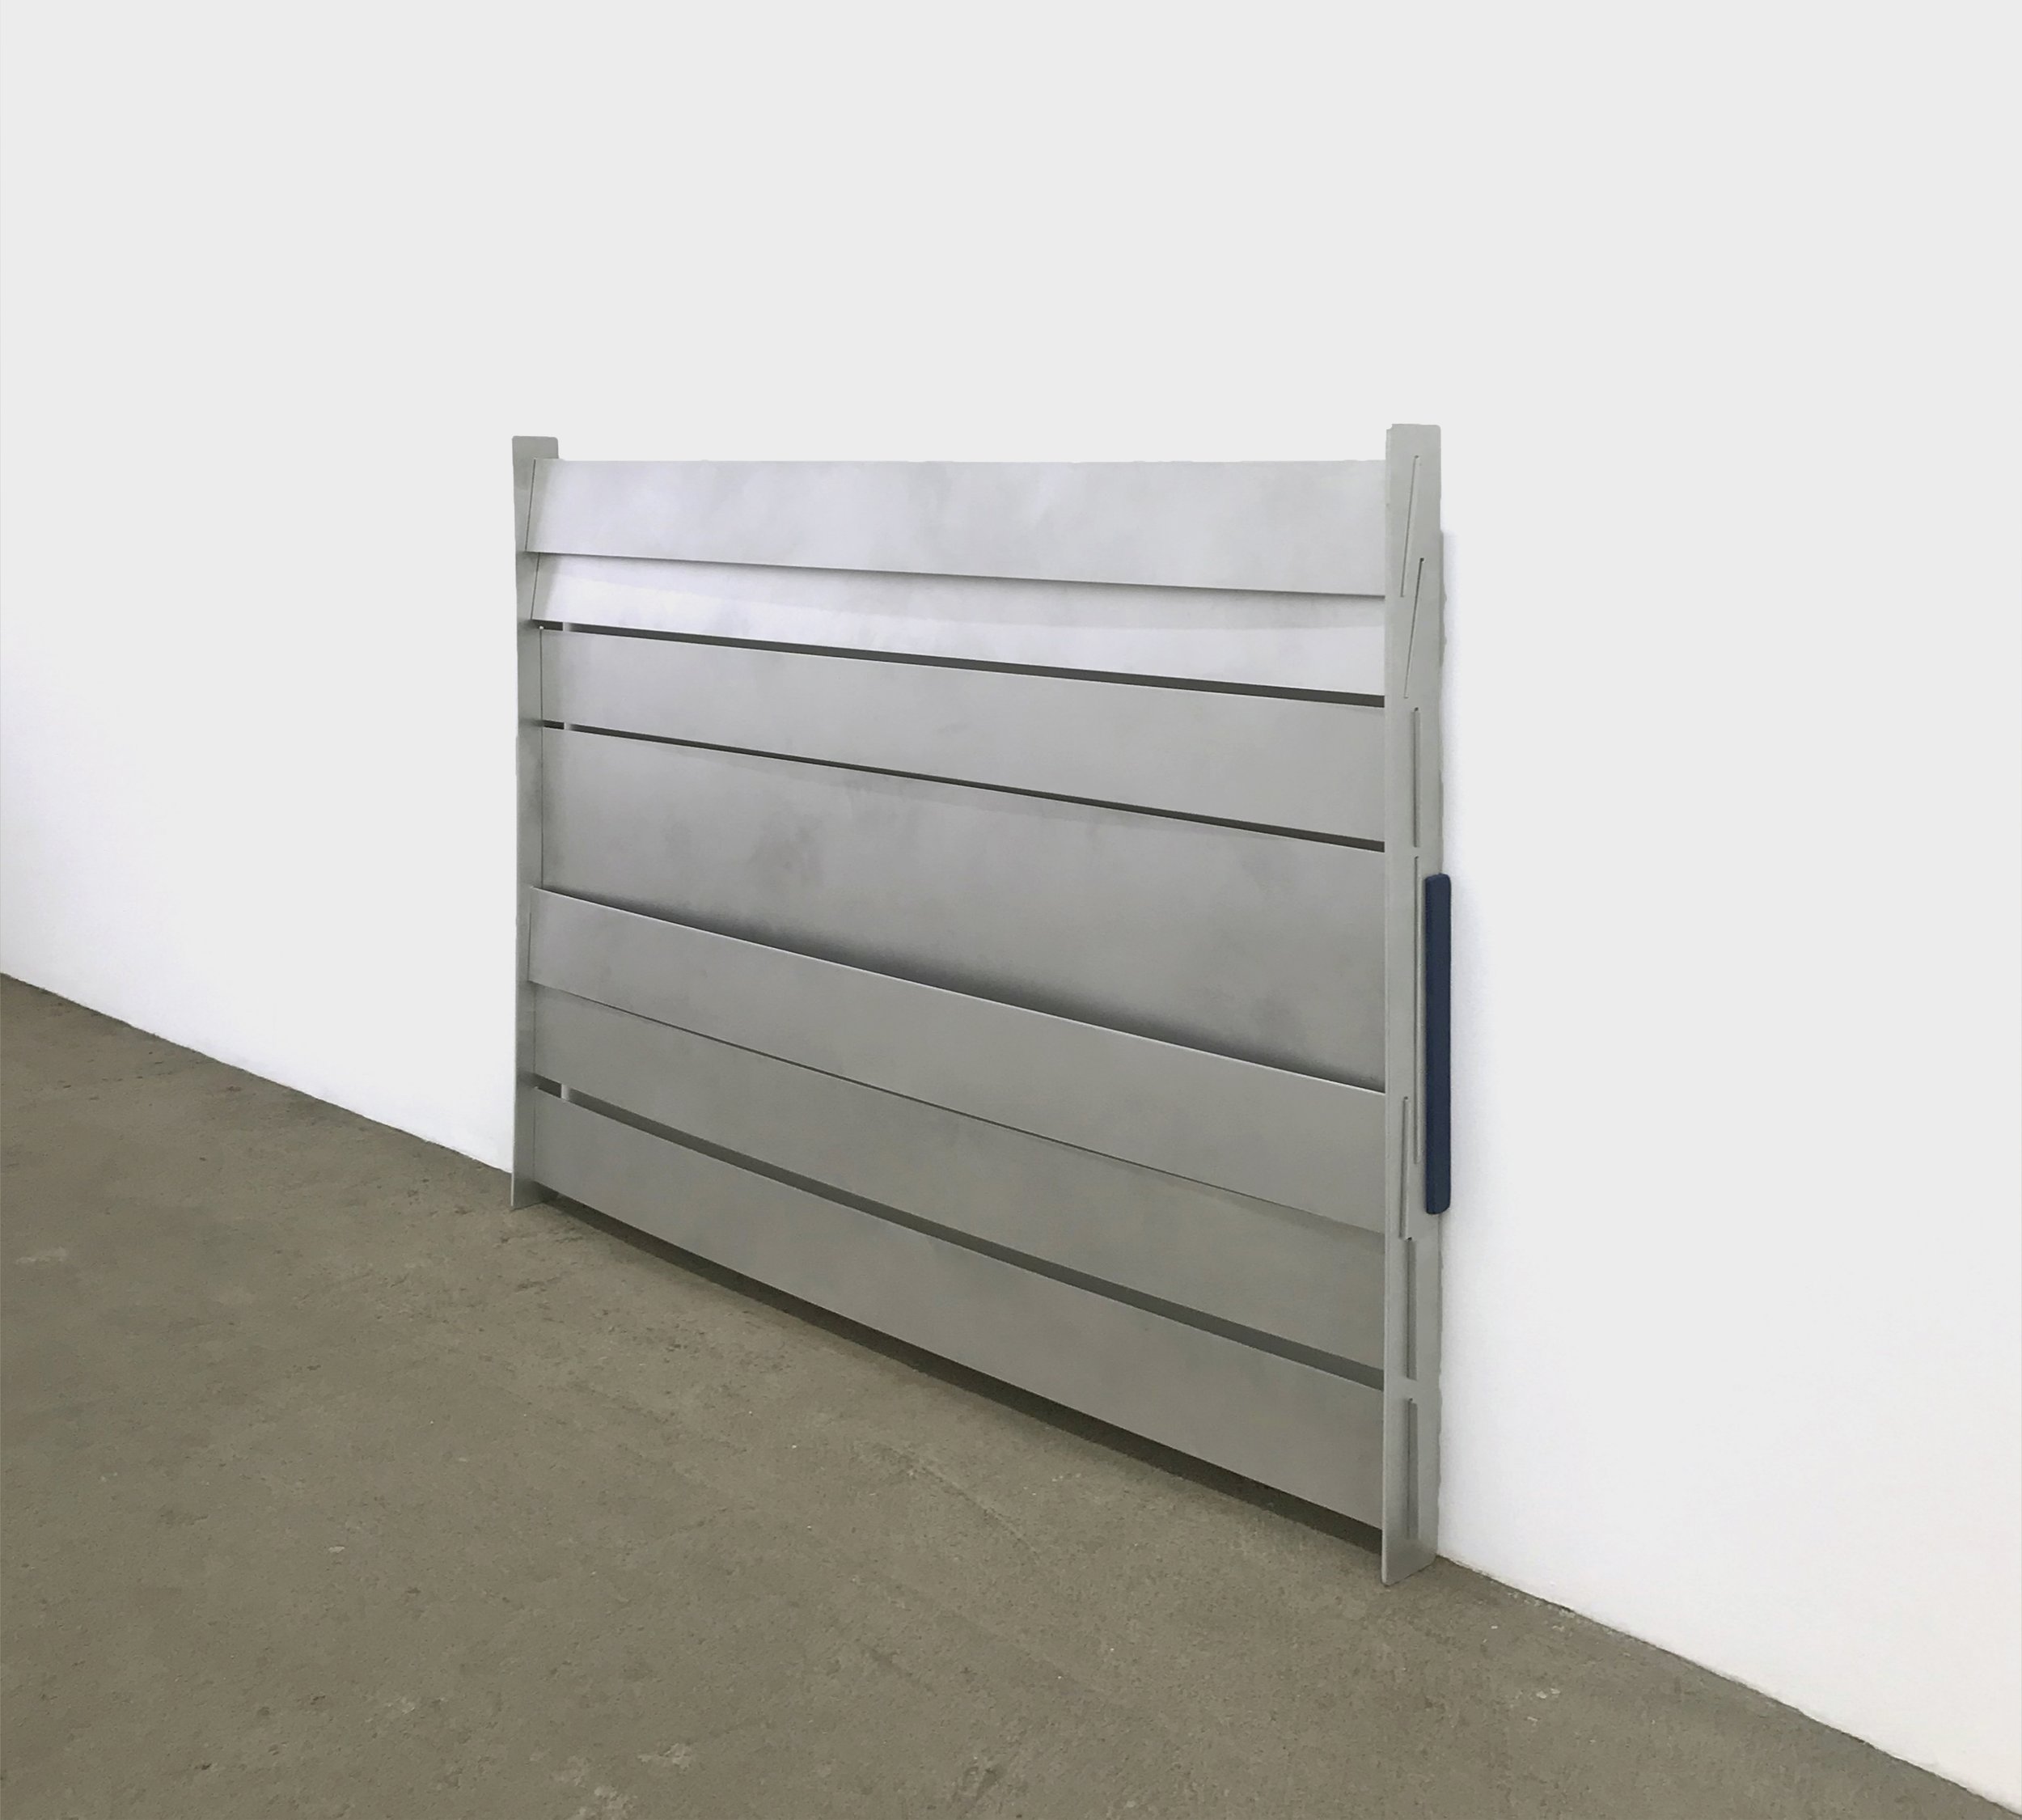  Elizabeth Orr  Indoor,  2022 aluminum, wood 41 x 48 x 3 inches (122 x 104 x 8 cm)  EO1 